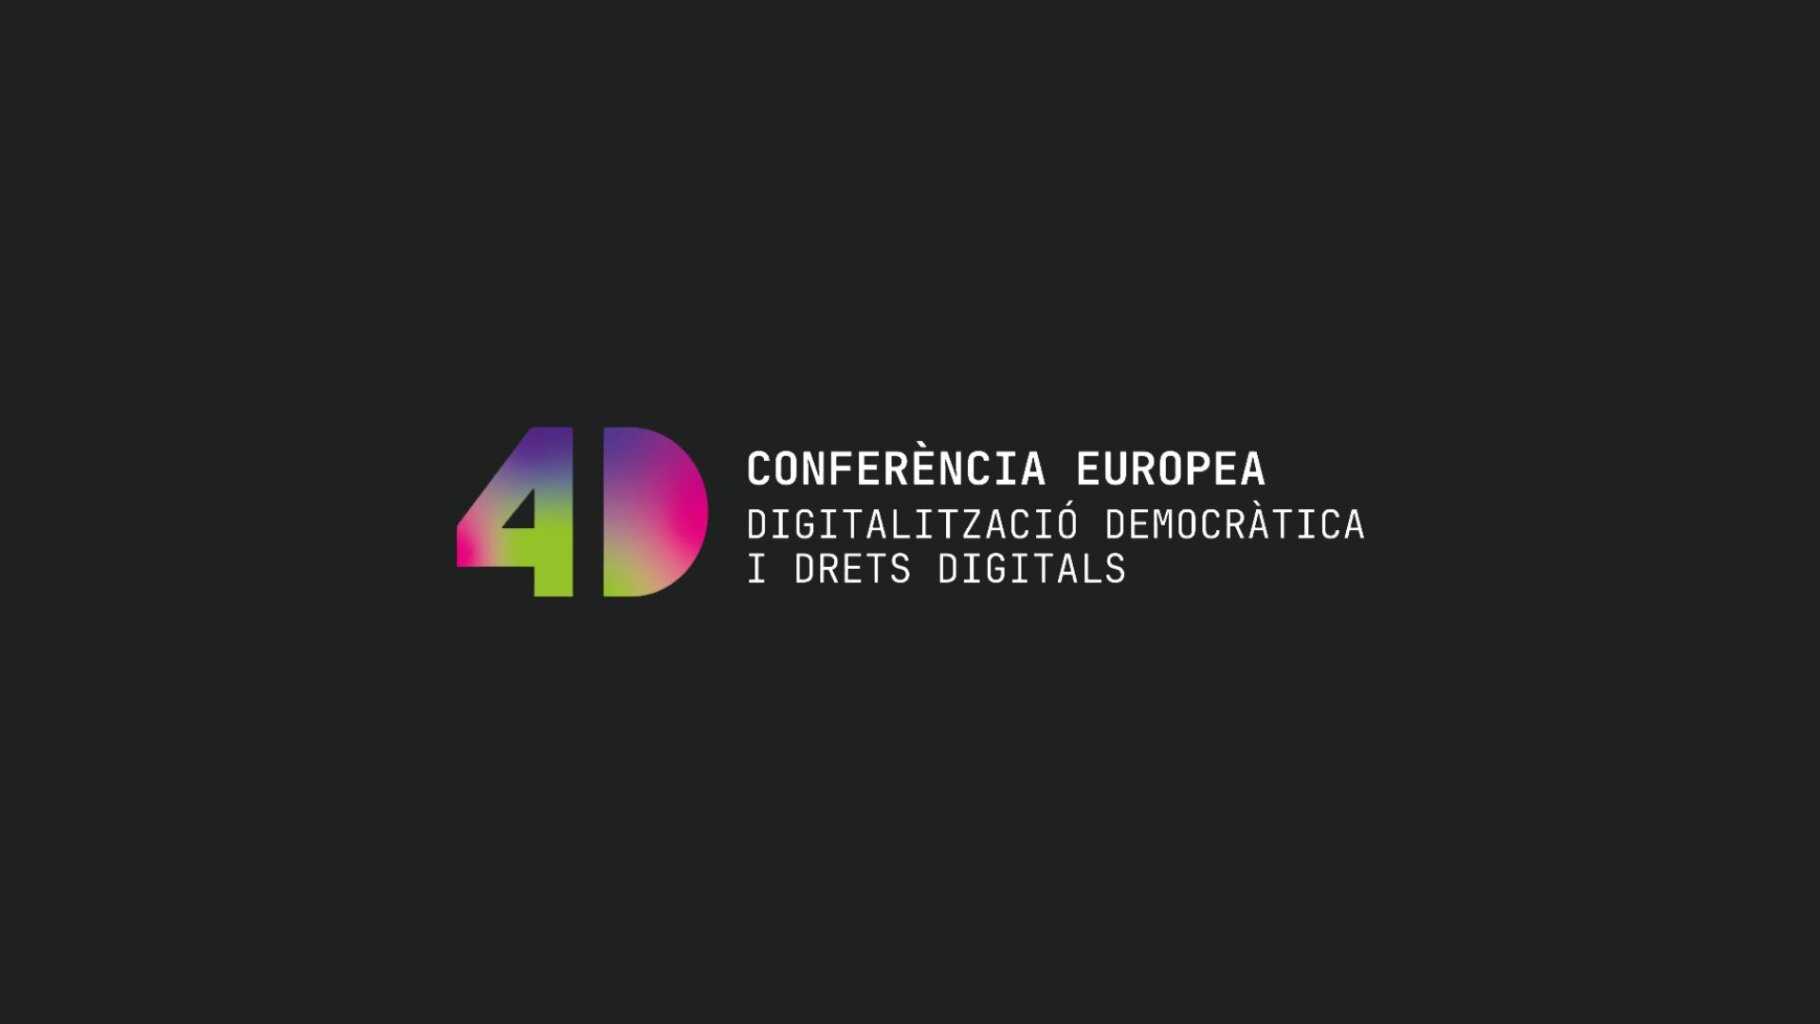 Conferència Europea 4D